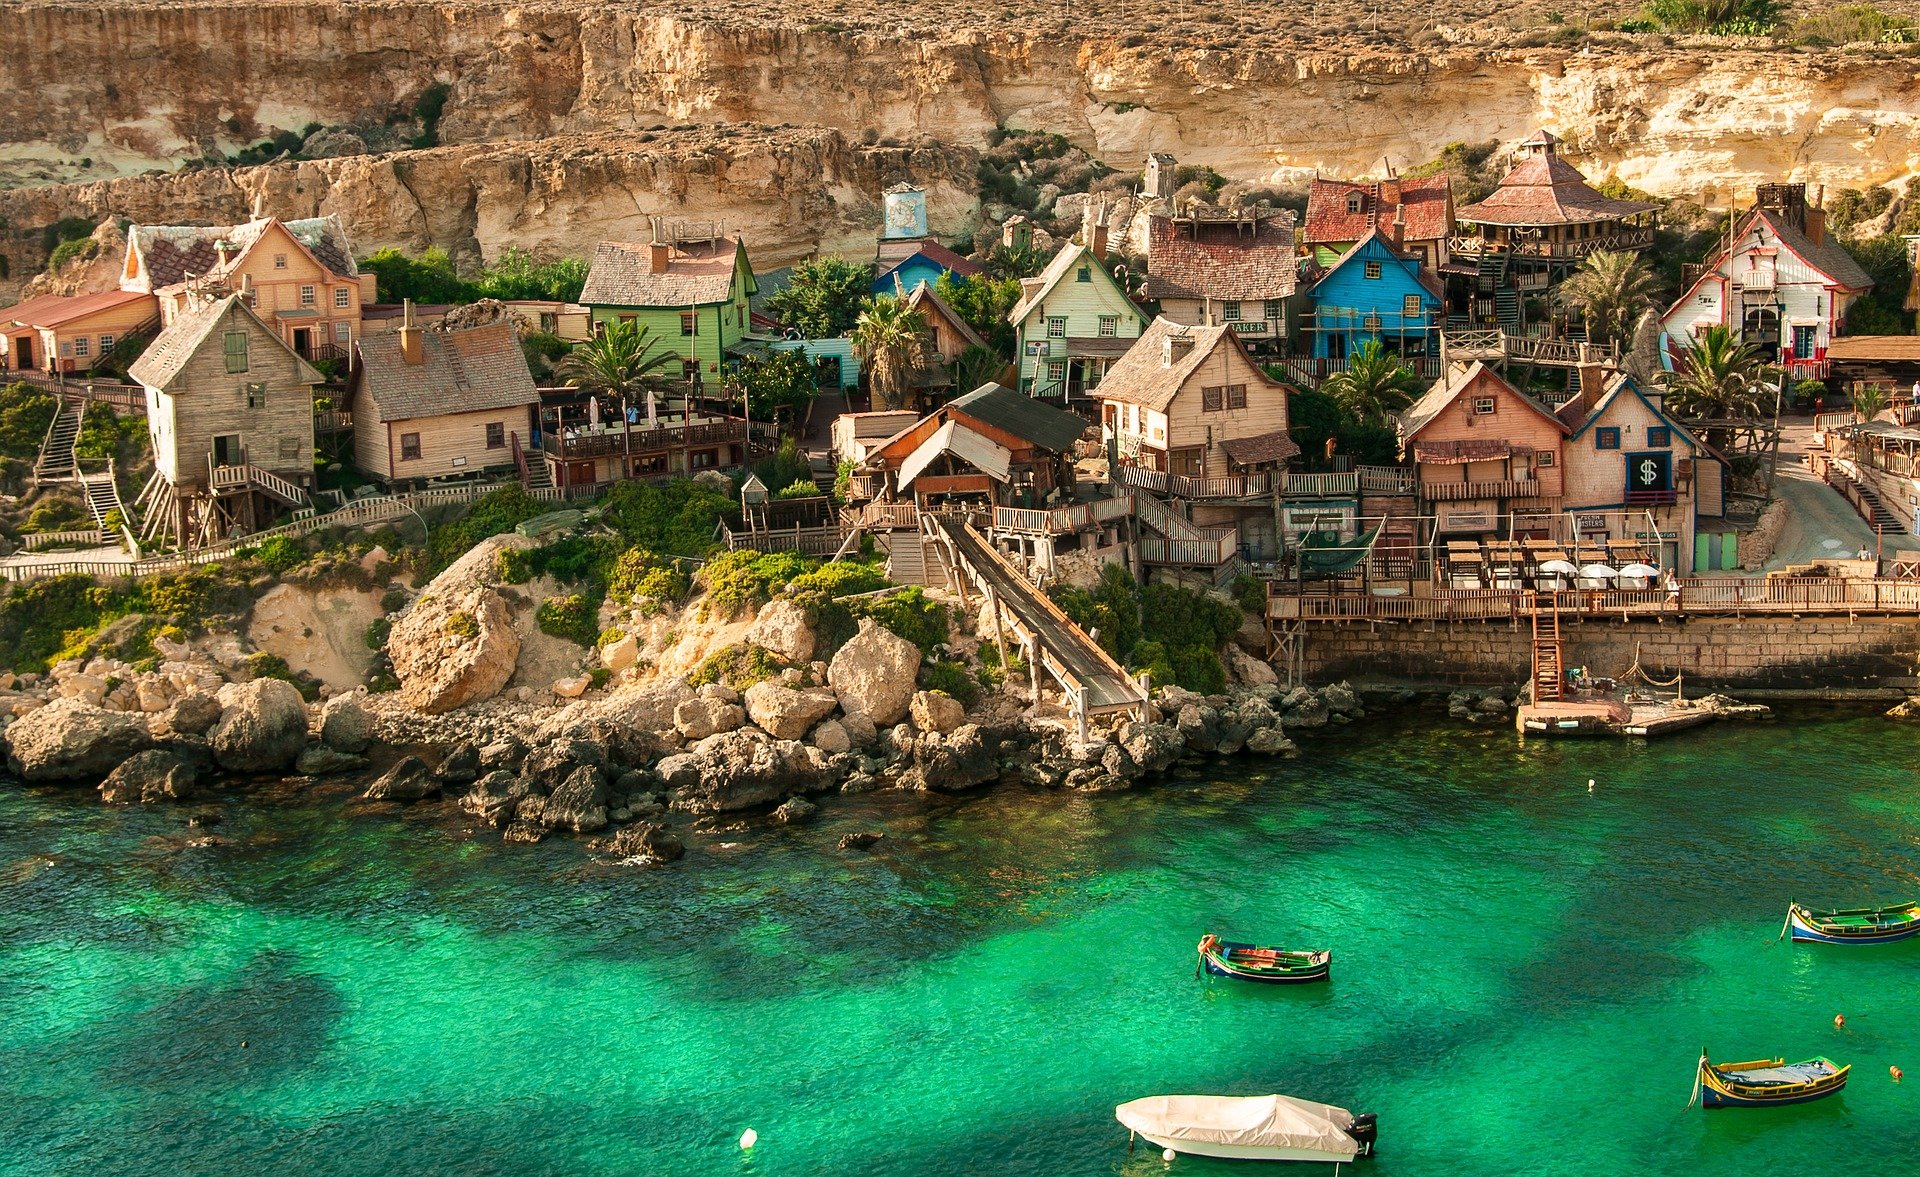 Popeye village in Malta.